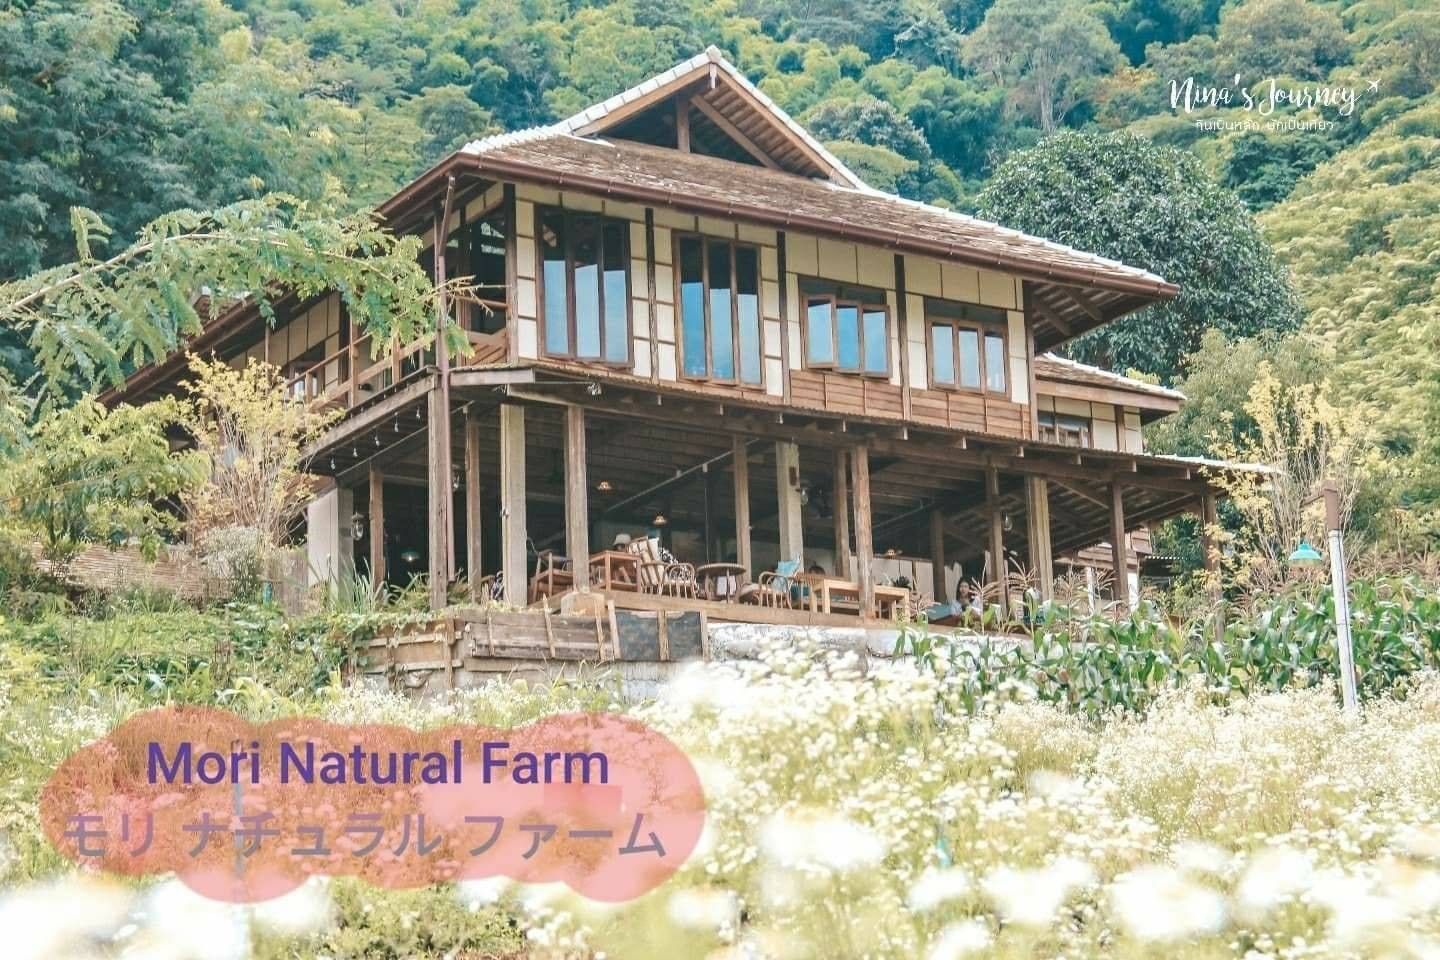 รีวิว Mori Natural Farm - คาเฟ่และที่พักสไตล์ญี่ปุ่น @ แม่ริม